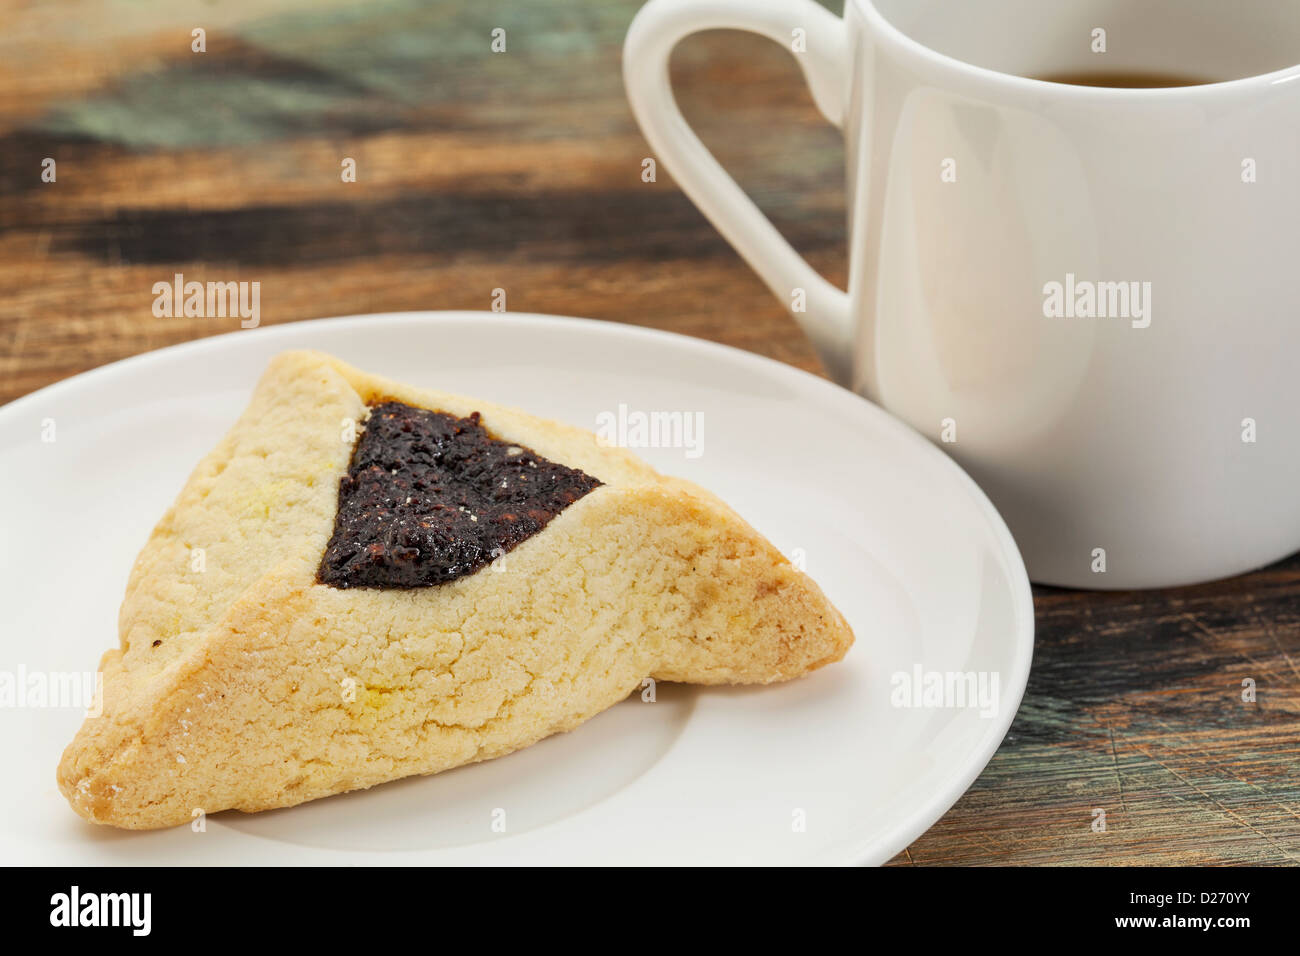 Cookie hamantaschen fruits sur une plaque avec une tasse de café Banque D'Images